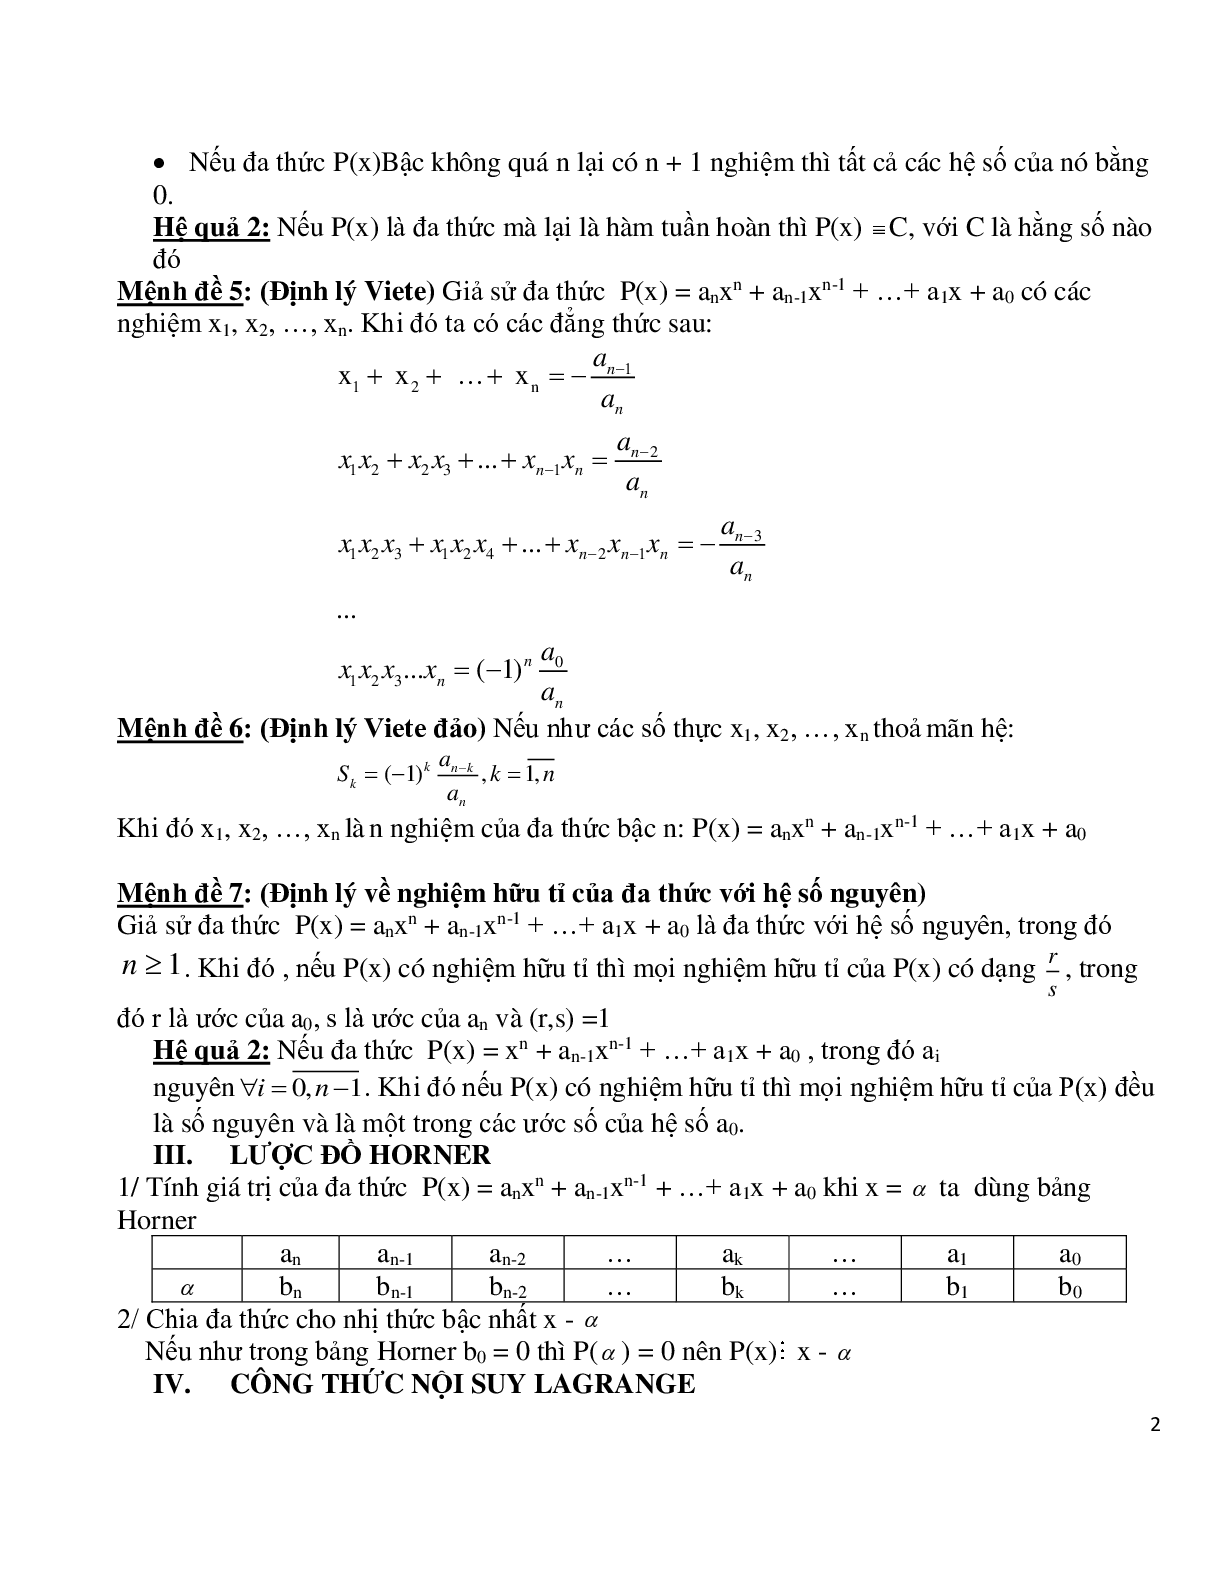 Chuyên đề bồi dưỡng học sinh giỏi toán đa thức (trang 2)